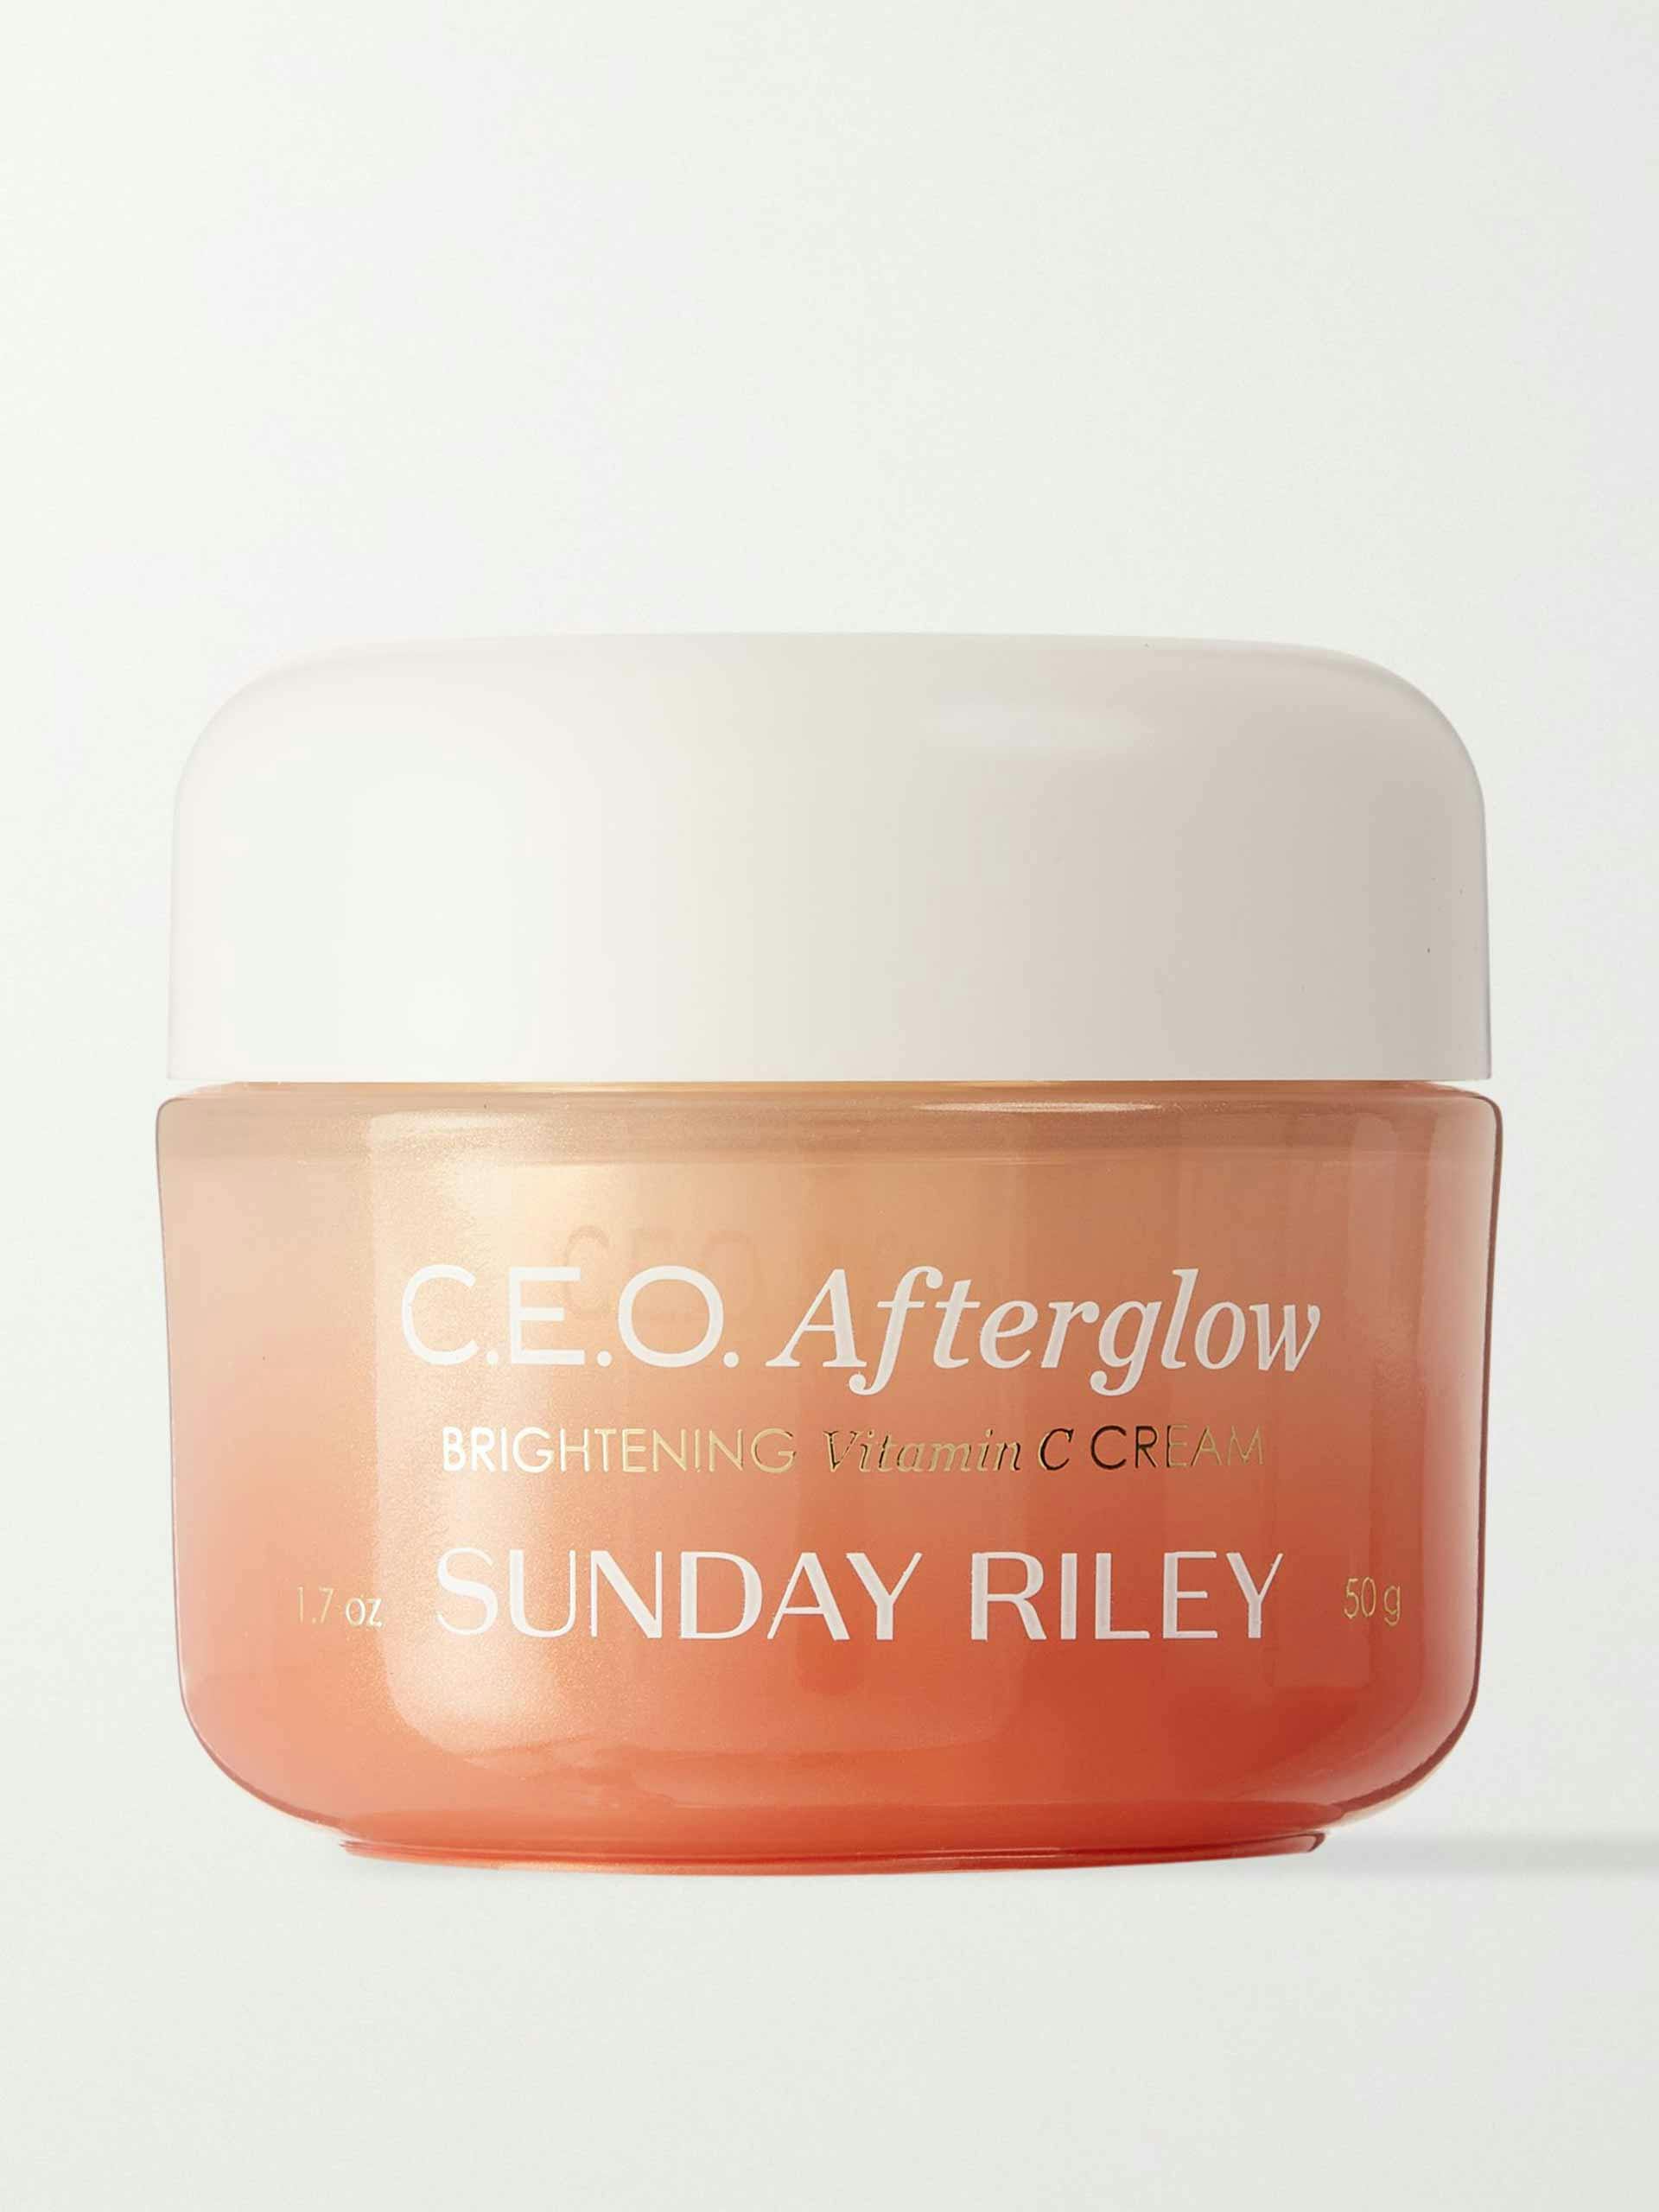 C.E.O Afterglow brightening vitamin c cream